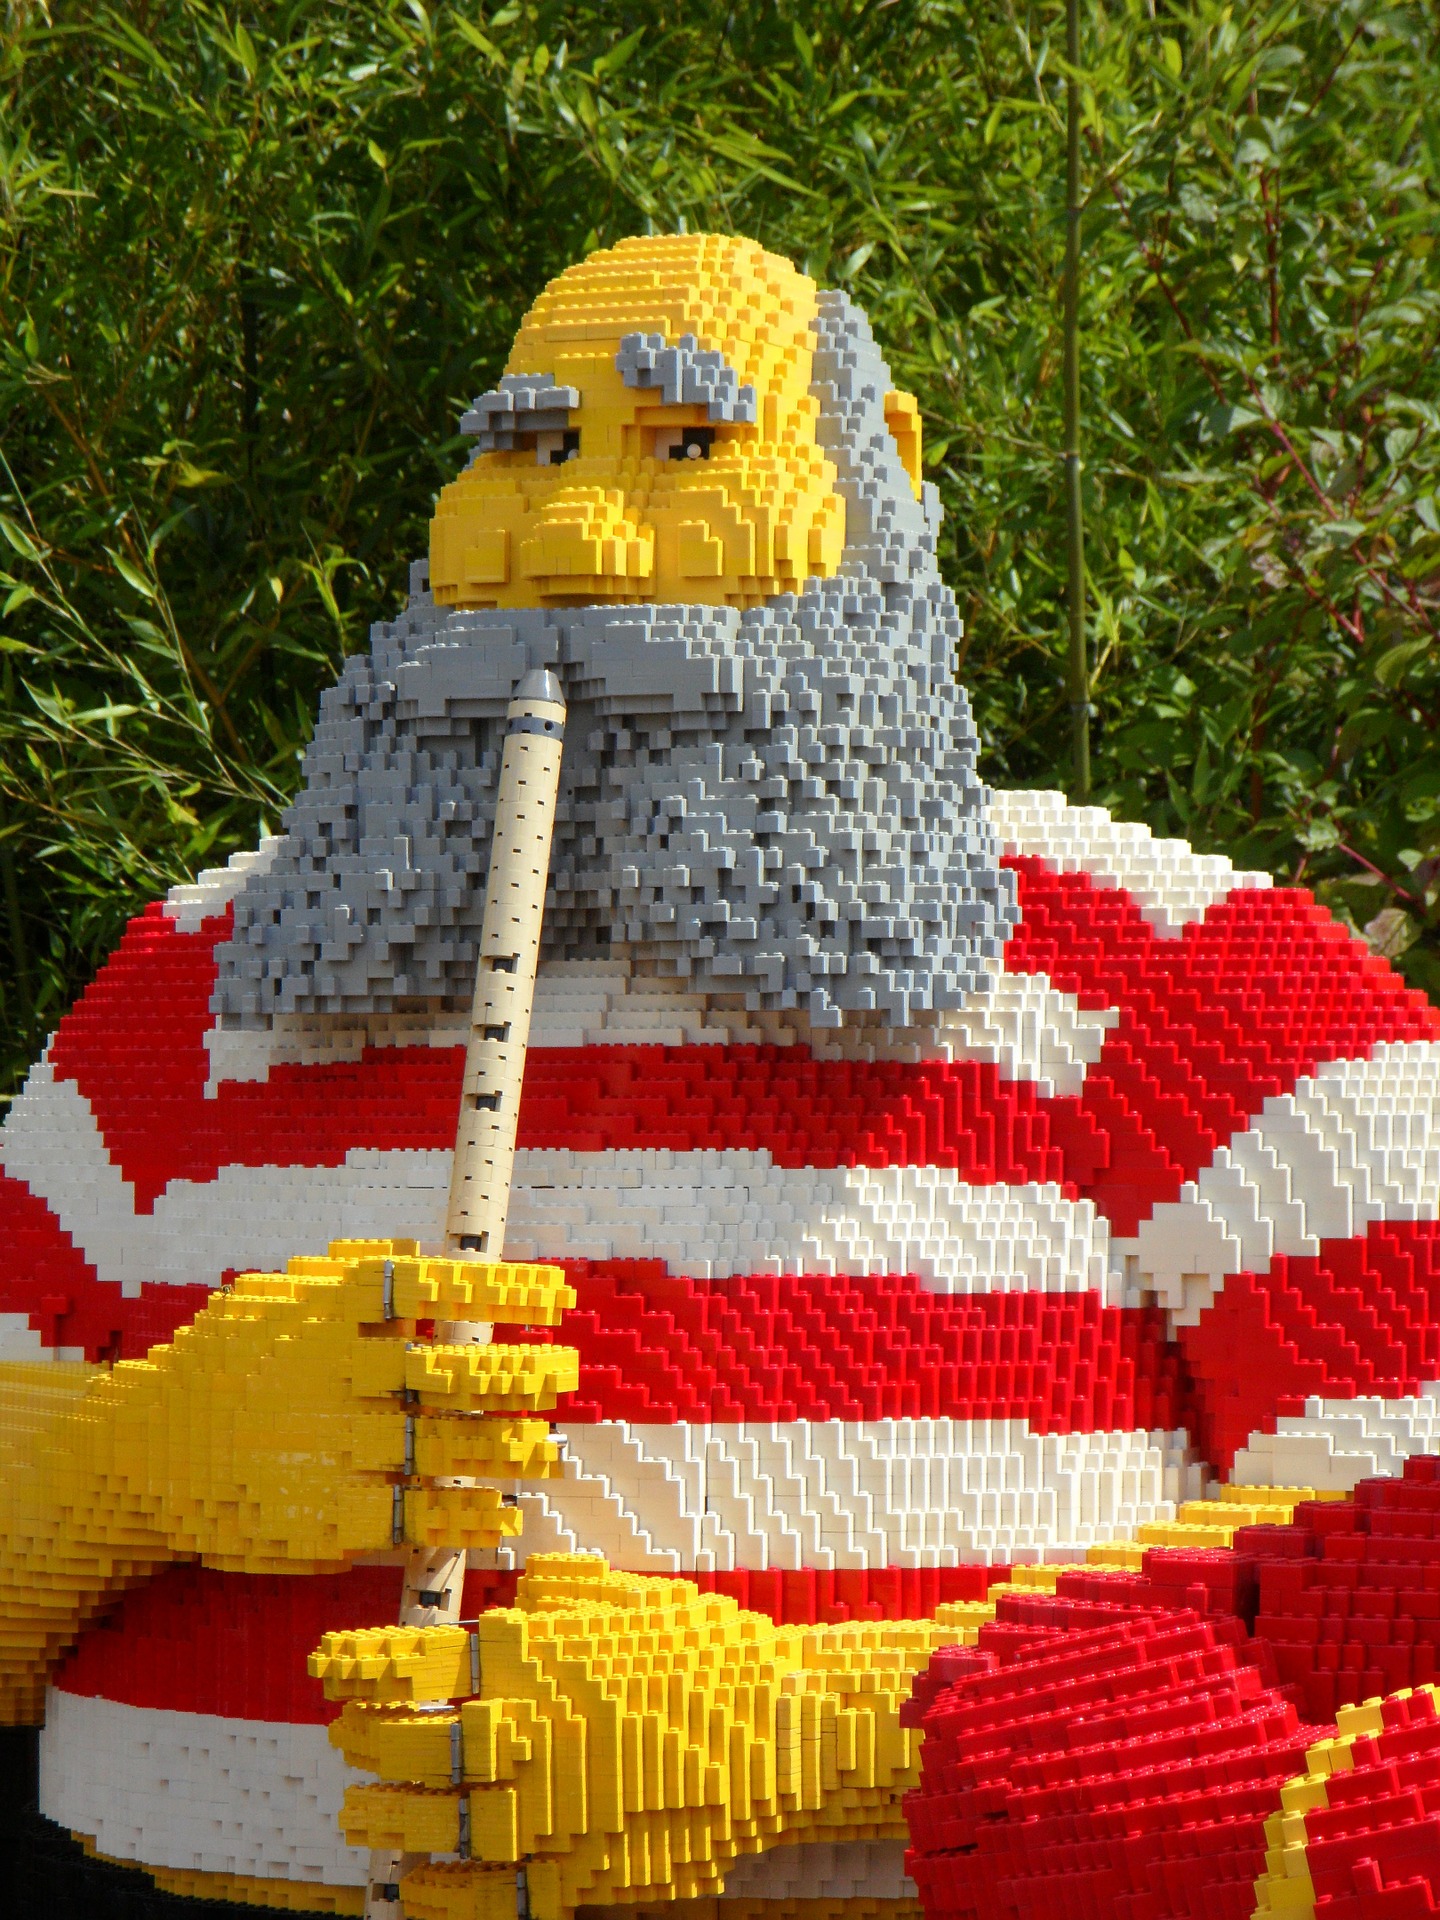 Der Europäische Gerichtshof (EuGH) entscheidet zum zweiten Mal über den Schutz von LEGO-Bausteinen – diesmal zu Gunsten der Firma LEGO.